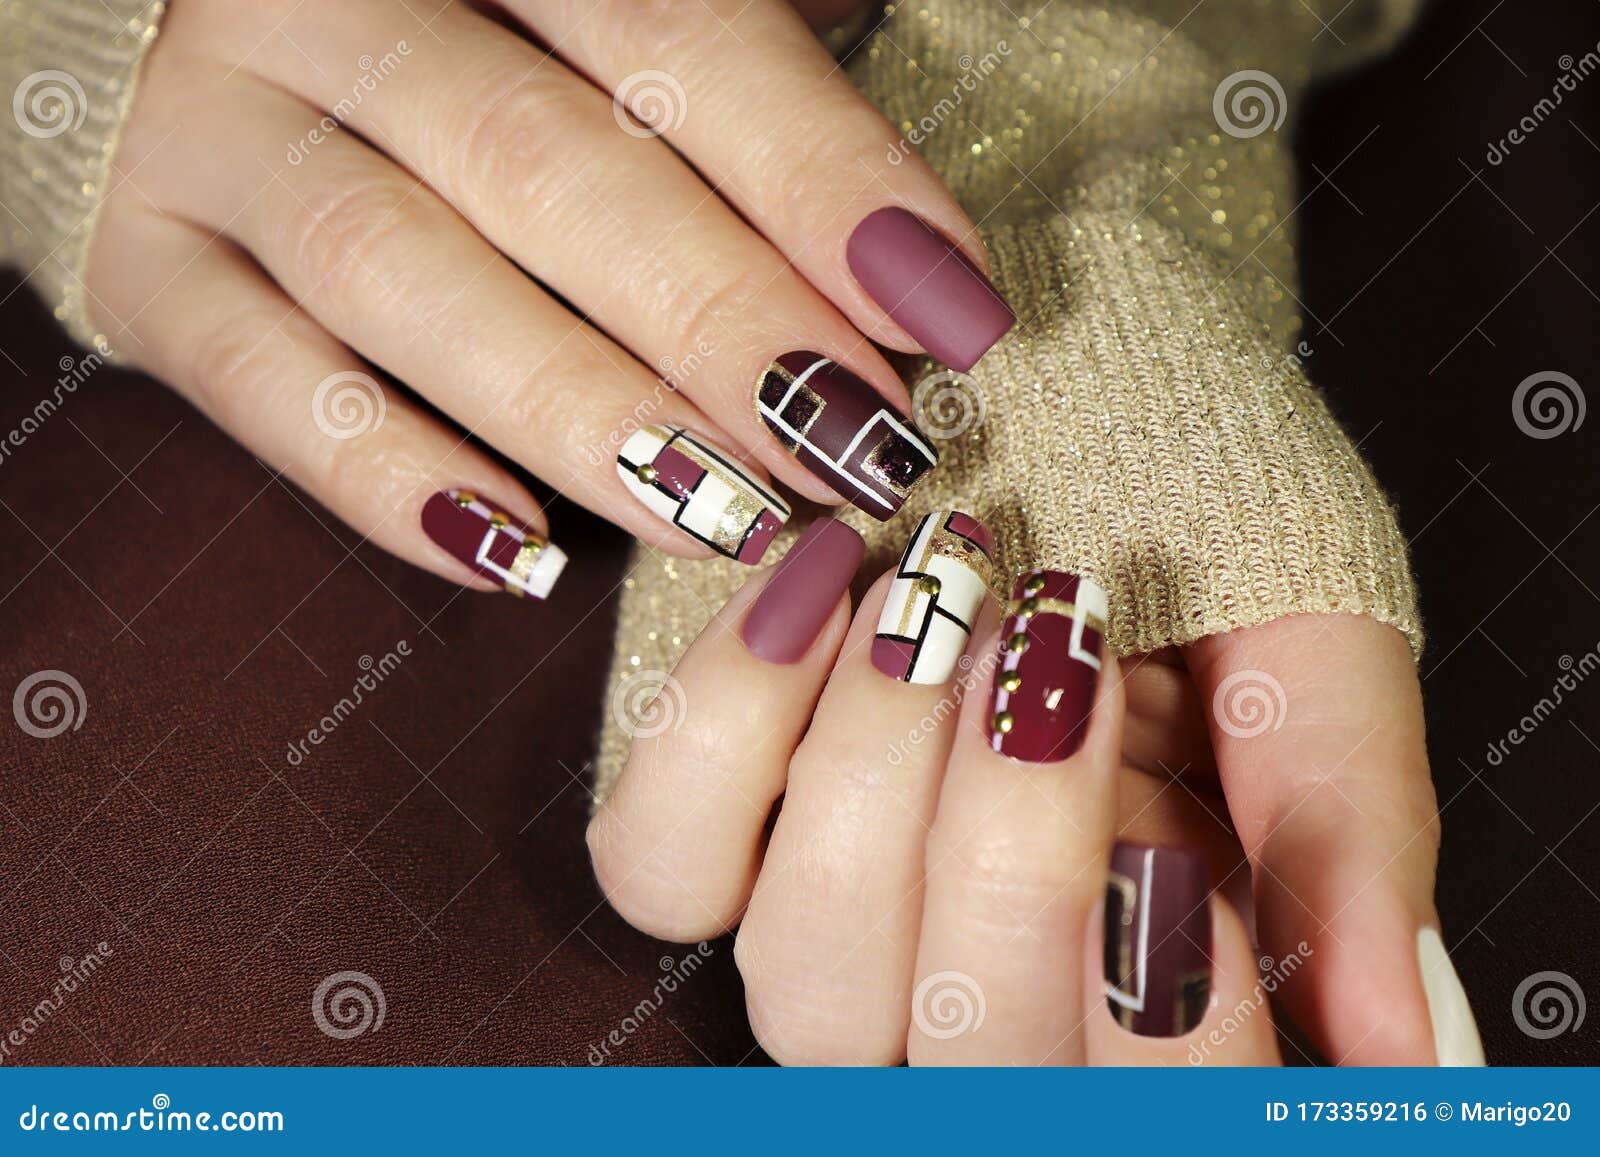 fashionable matte glossy nail art.